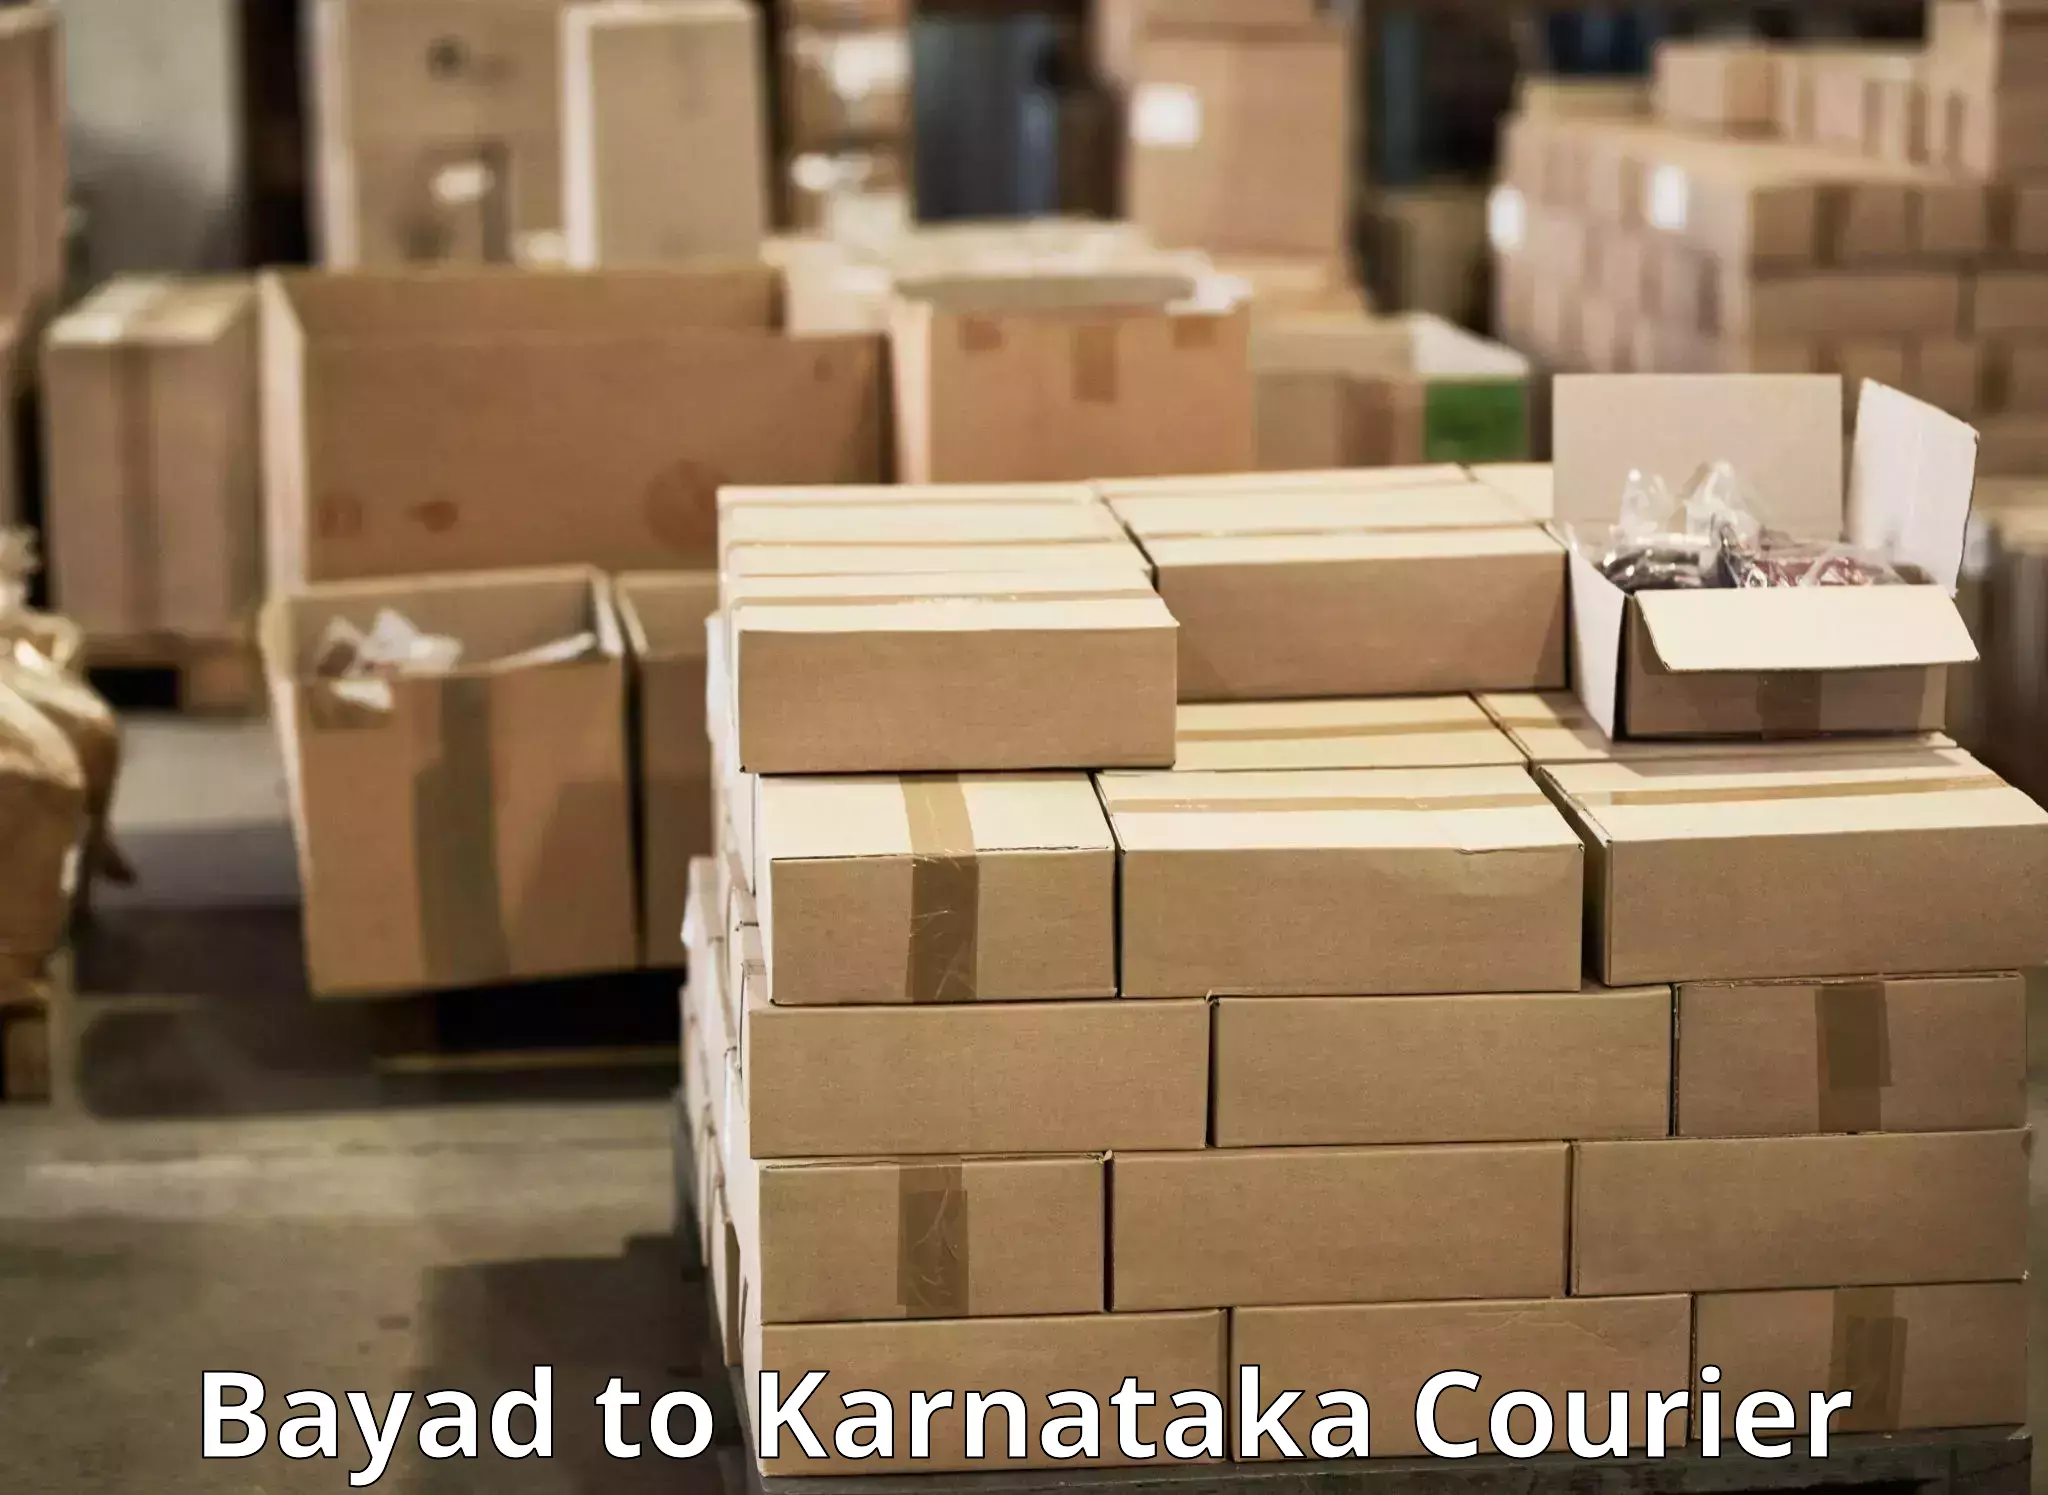 Logistics and distribution Bayad to Chikkamagaluru